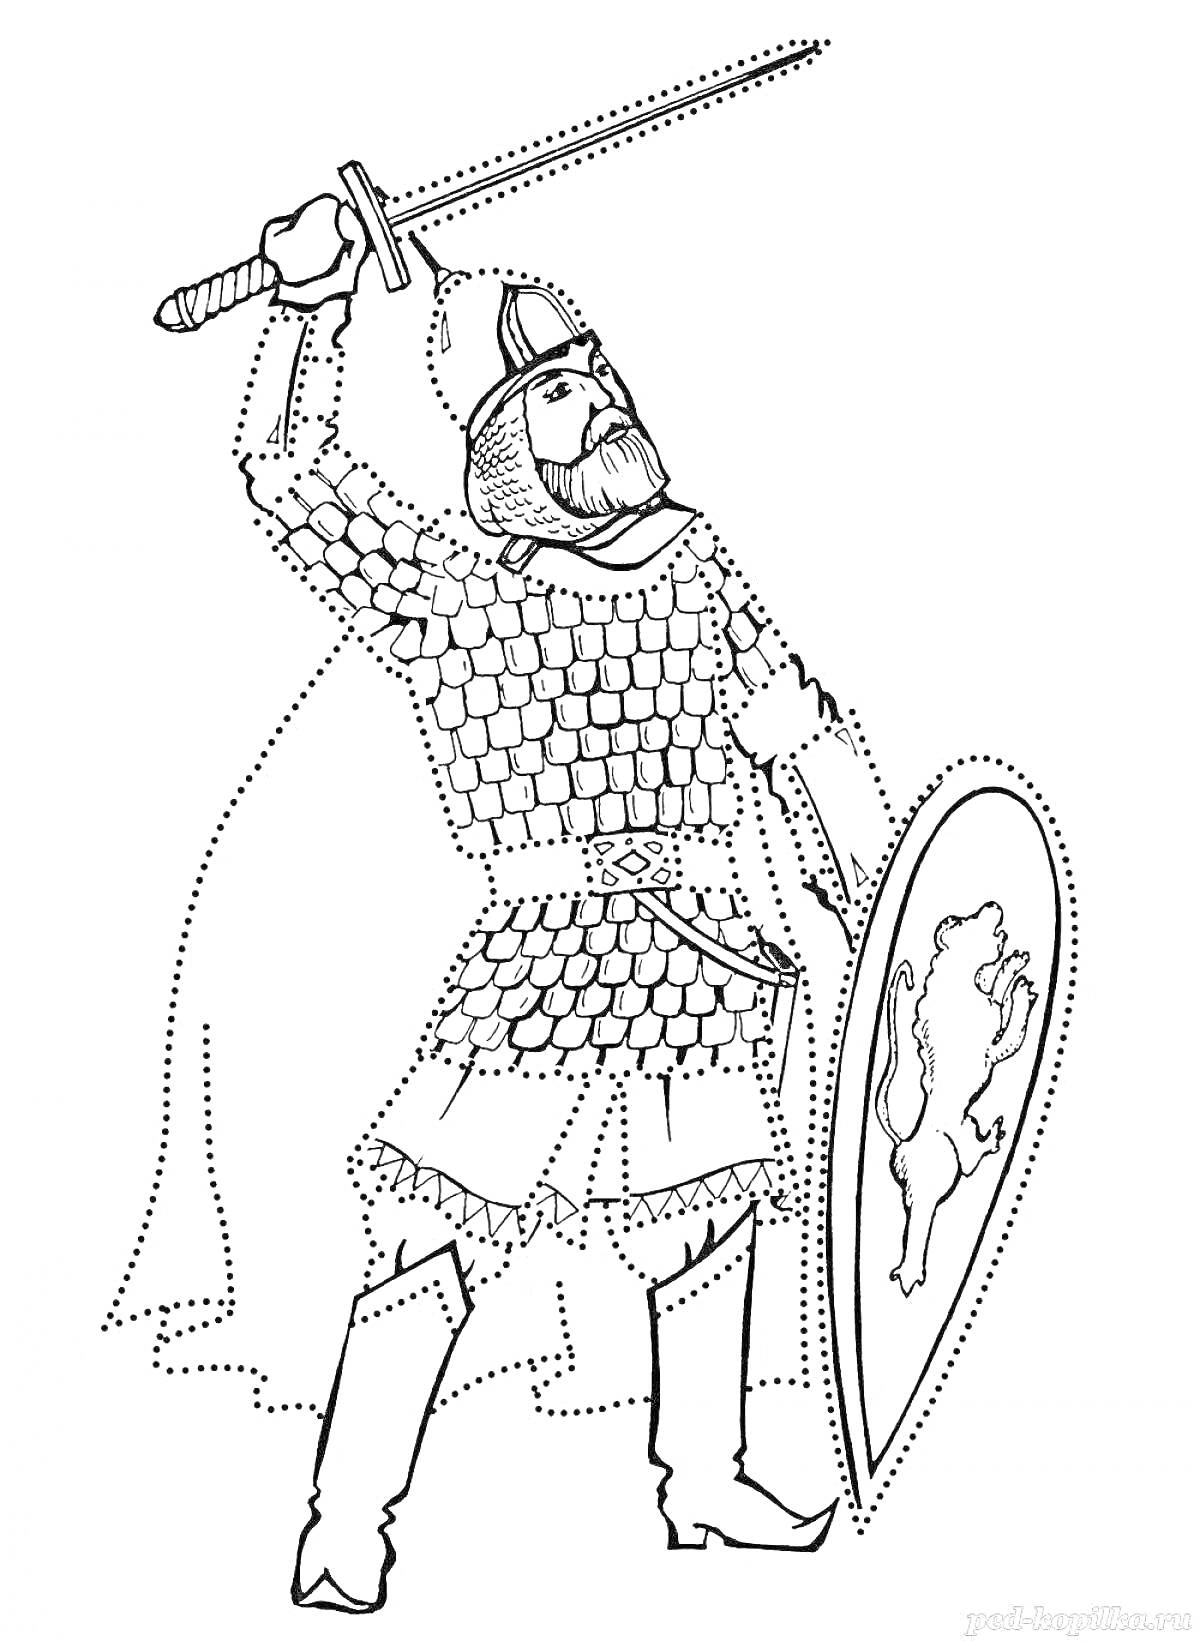 РаскраскаРусский воин с поднятым мечом и круглым щитом с изображением льва